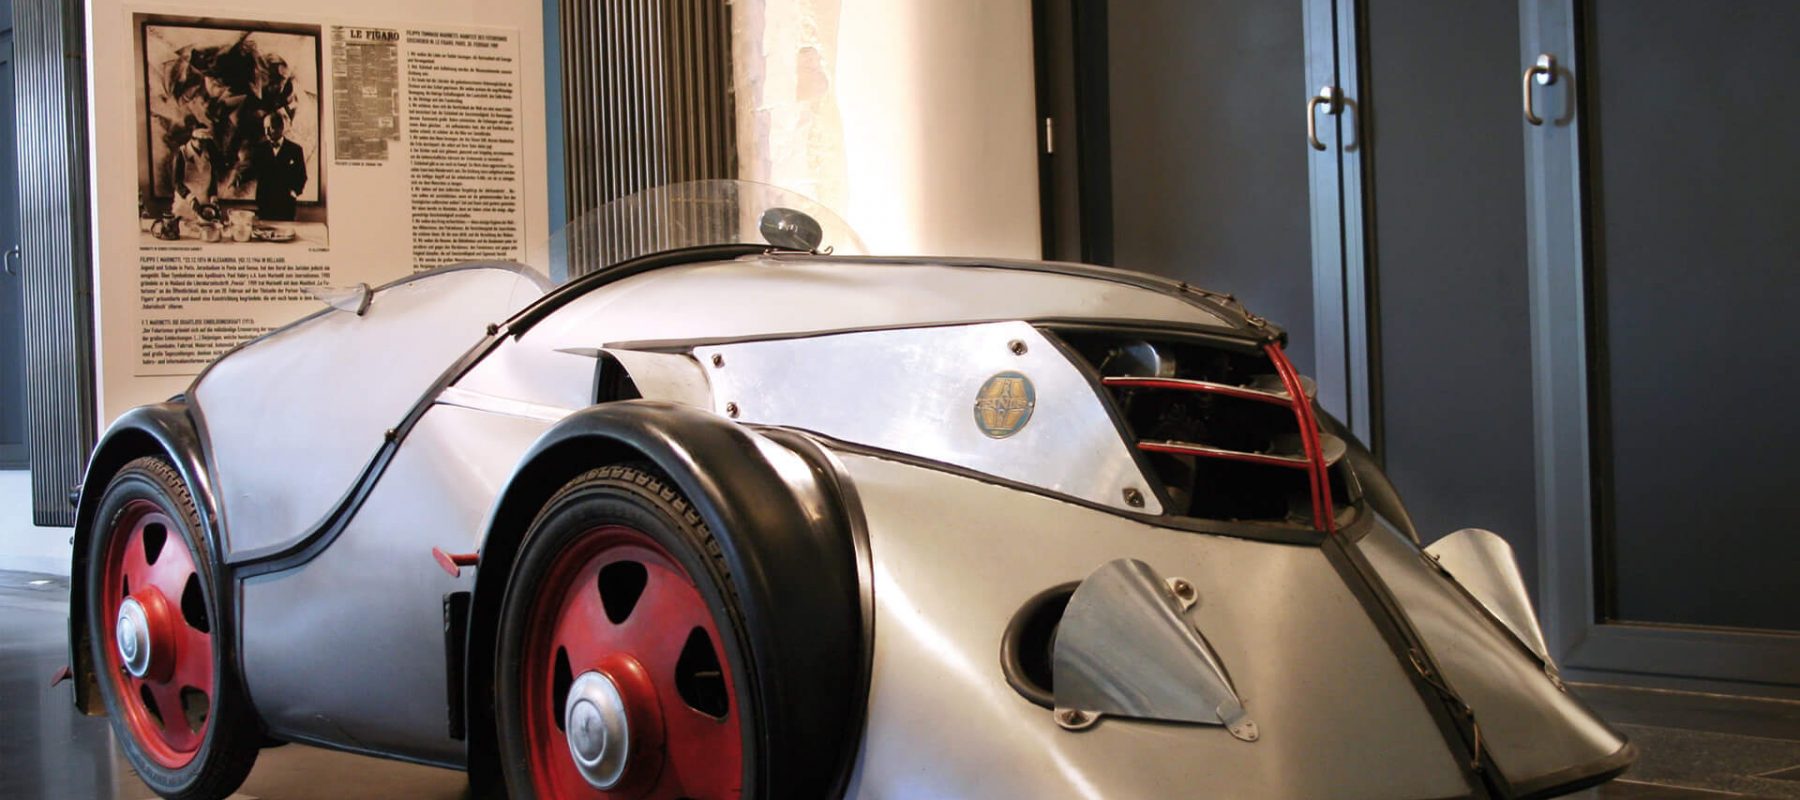 Das Hamburger Automuseum Prototyp wagte 2009 mit der Sonderausstellung 